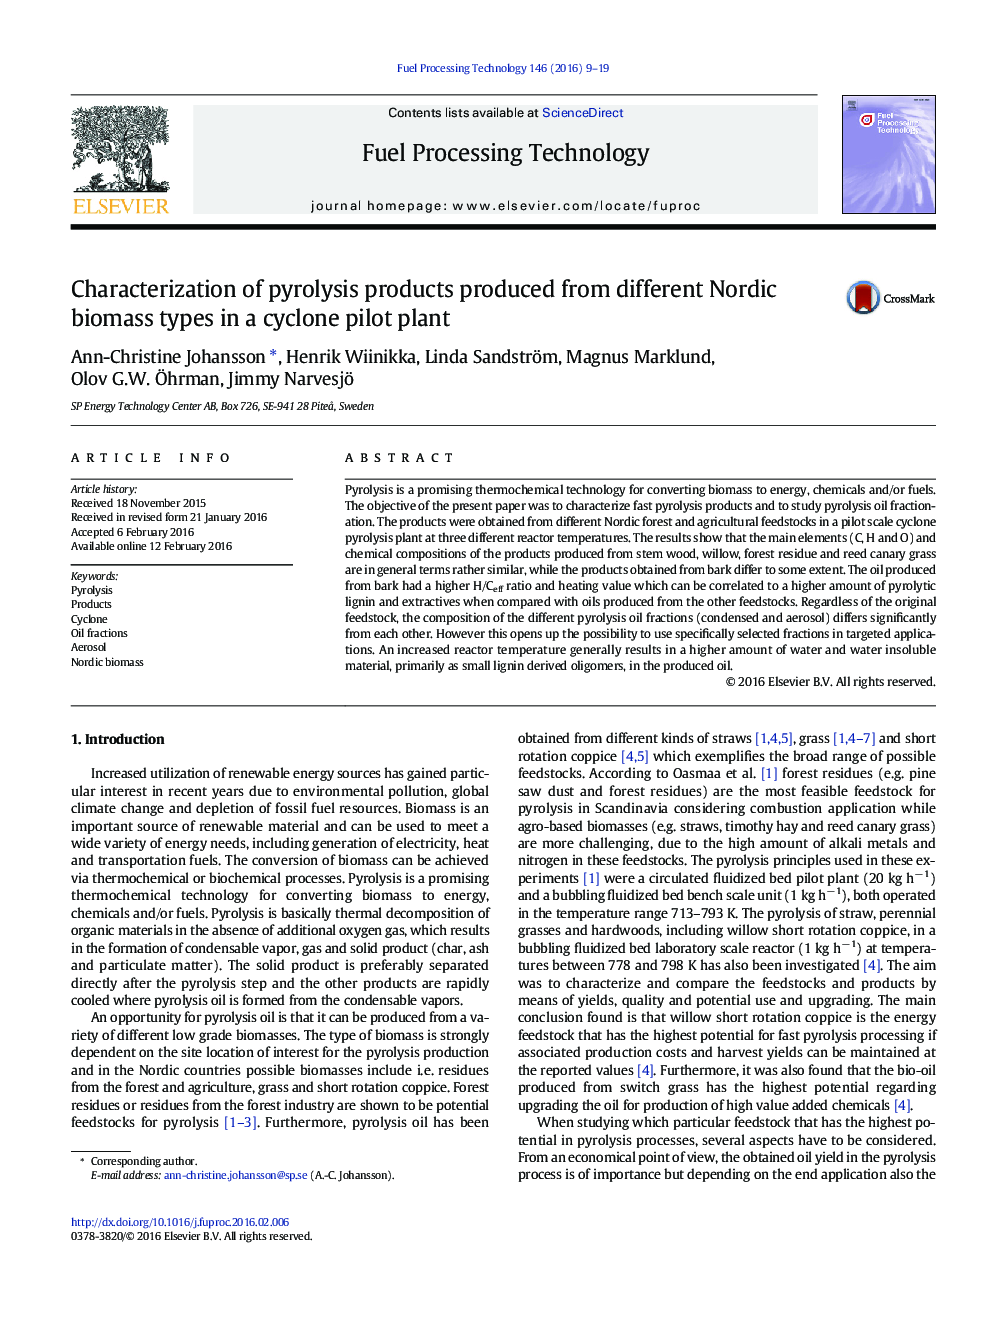 مشخصه های محصولات پیررولیز تولید شده از انواع مختلف زیست توده نوردیک در یک کارخانه آزمایشی سیکلون 